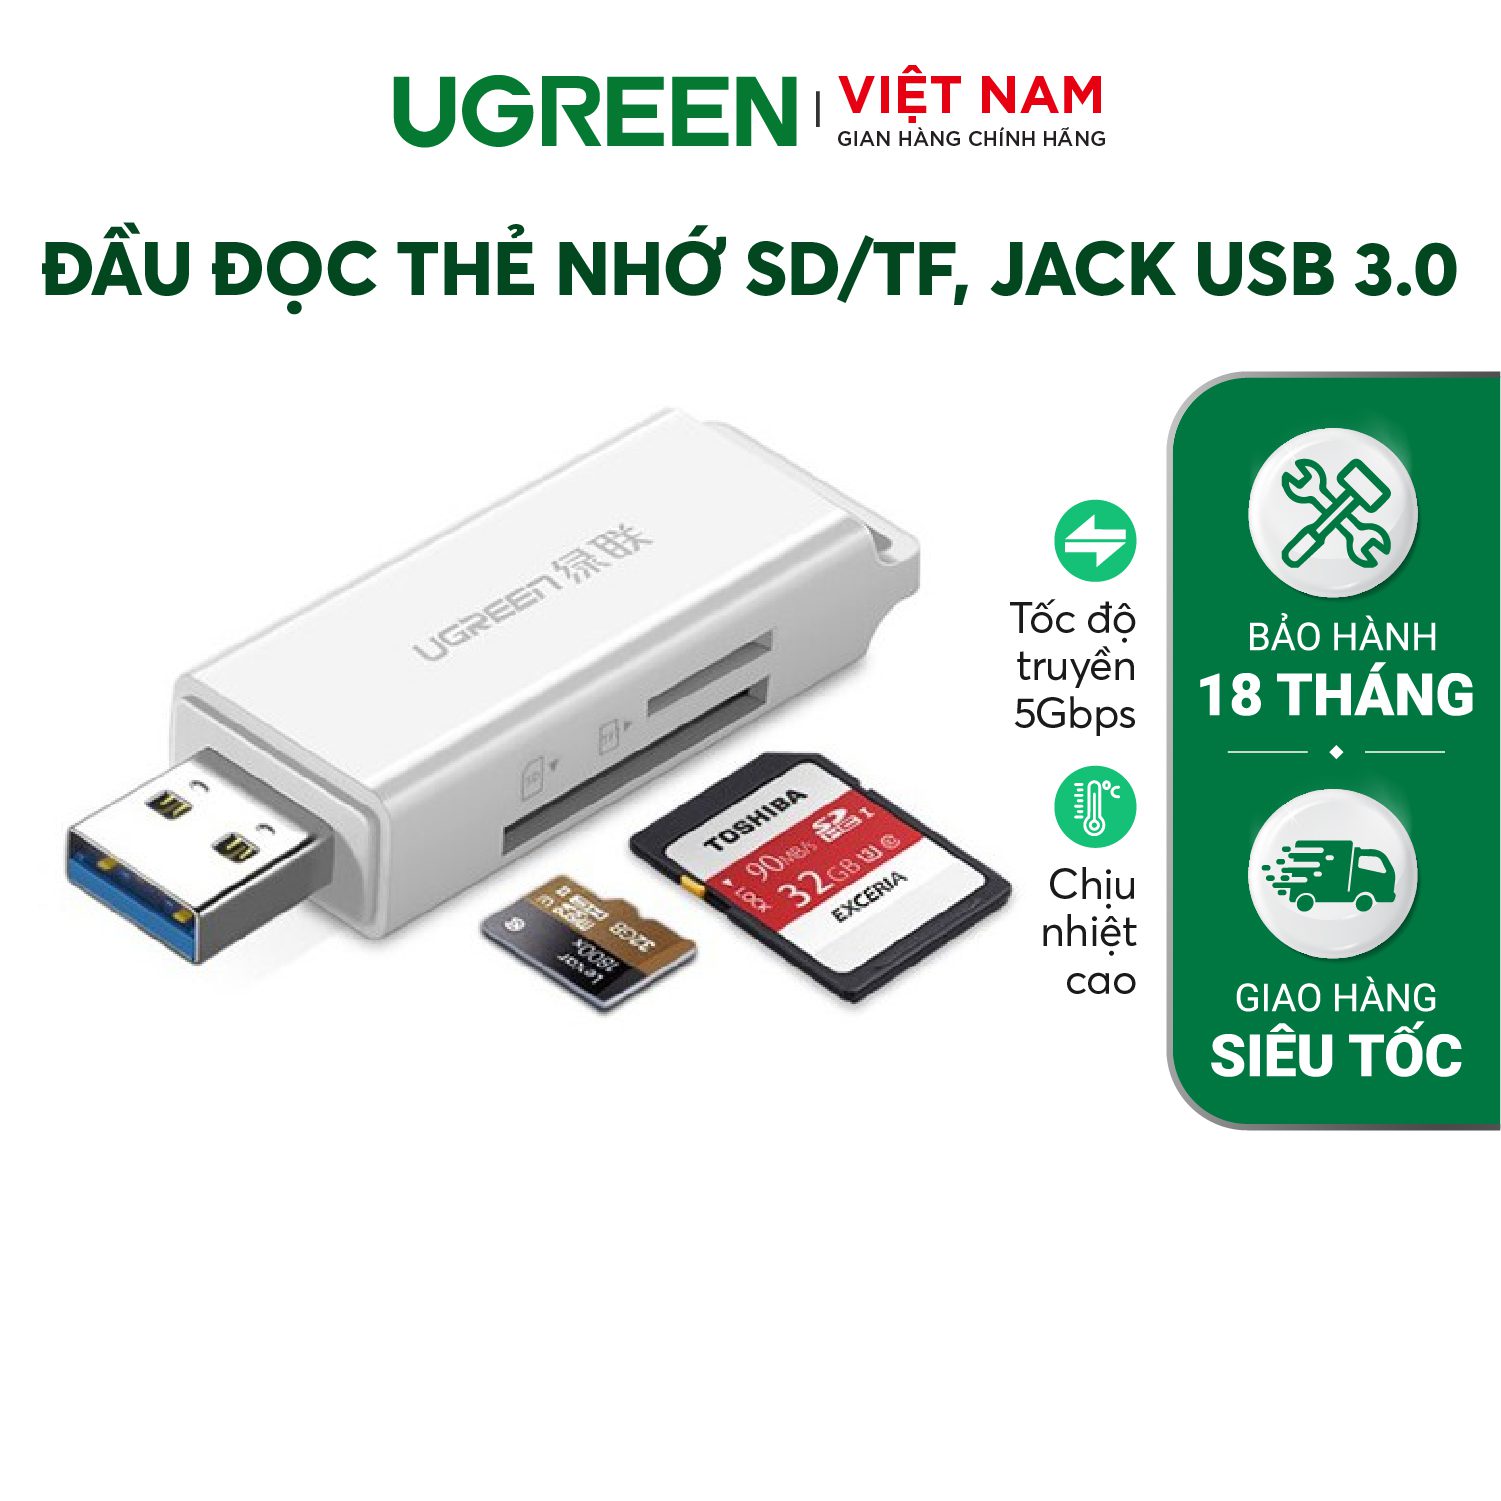 Đầu đọc thẻ nhớ USB 3.0 UGREEN CM104 - Hỗ trợ đọc thẻ TF/SD – Ugreen Việt Nam